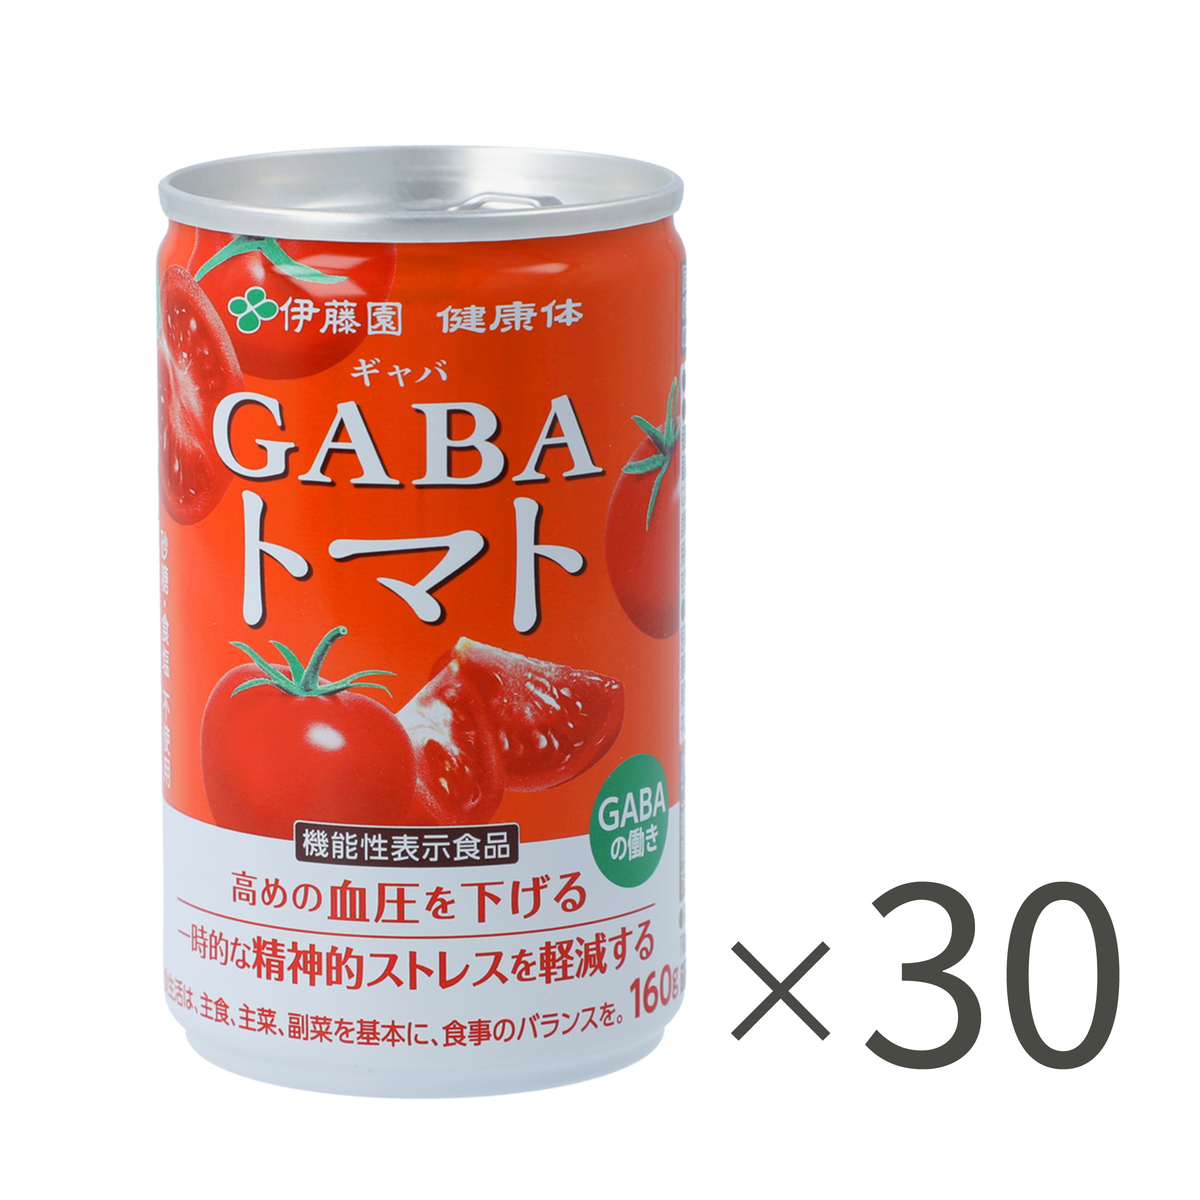  伊藤園「健康体」GABAトマト160g×30本